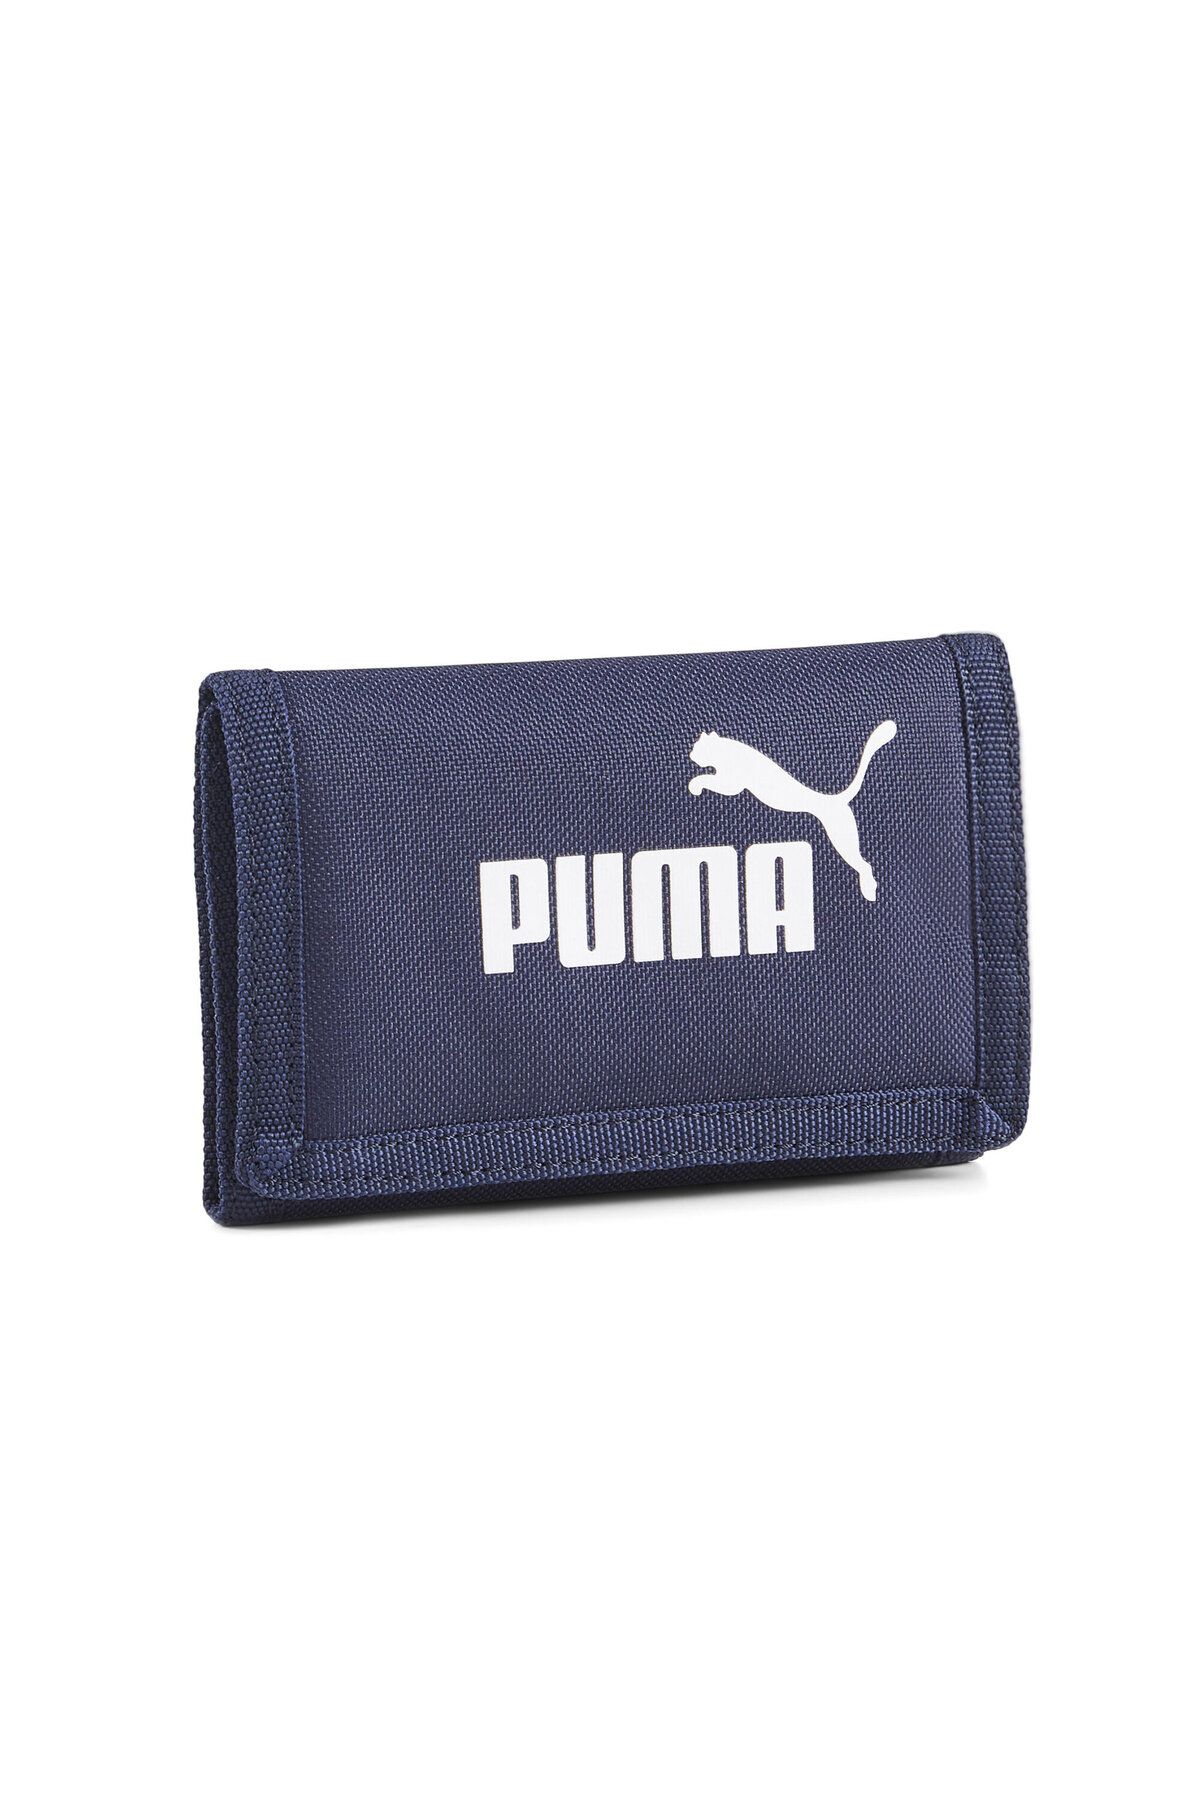 Puma Phase Wallet Cüzdan 7995102 Lacivert